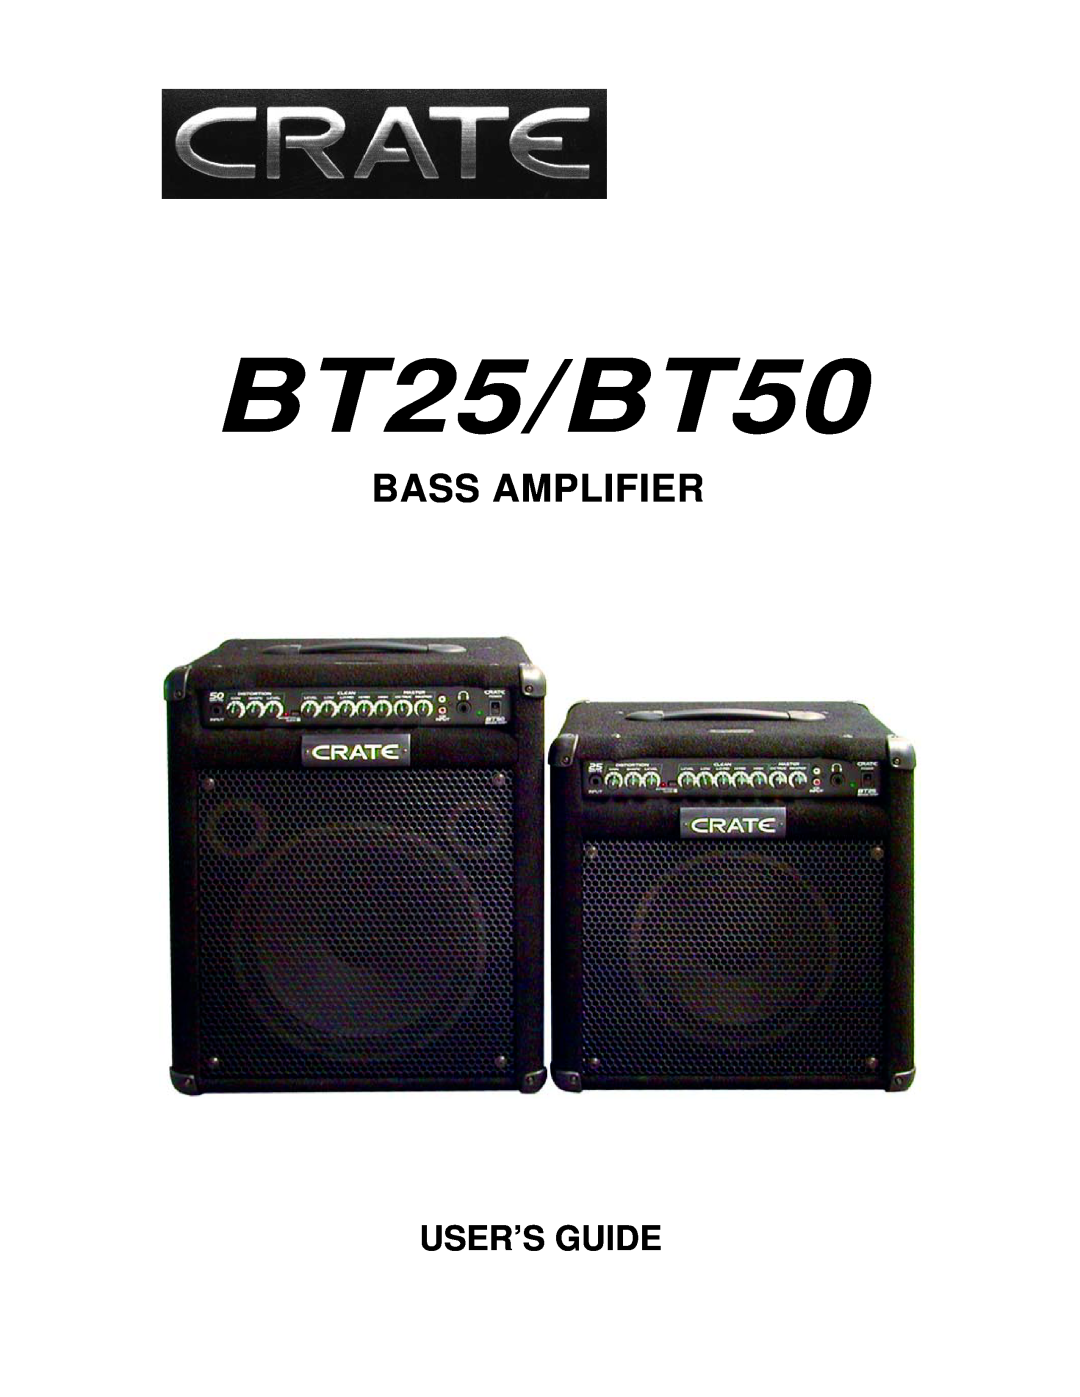 Crate Amplifiers crate bass amplifier, bt25/bt50 manual BT25/BT50, Bass Amplifier, User’S Guide 